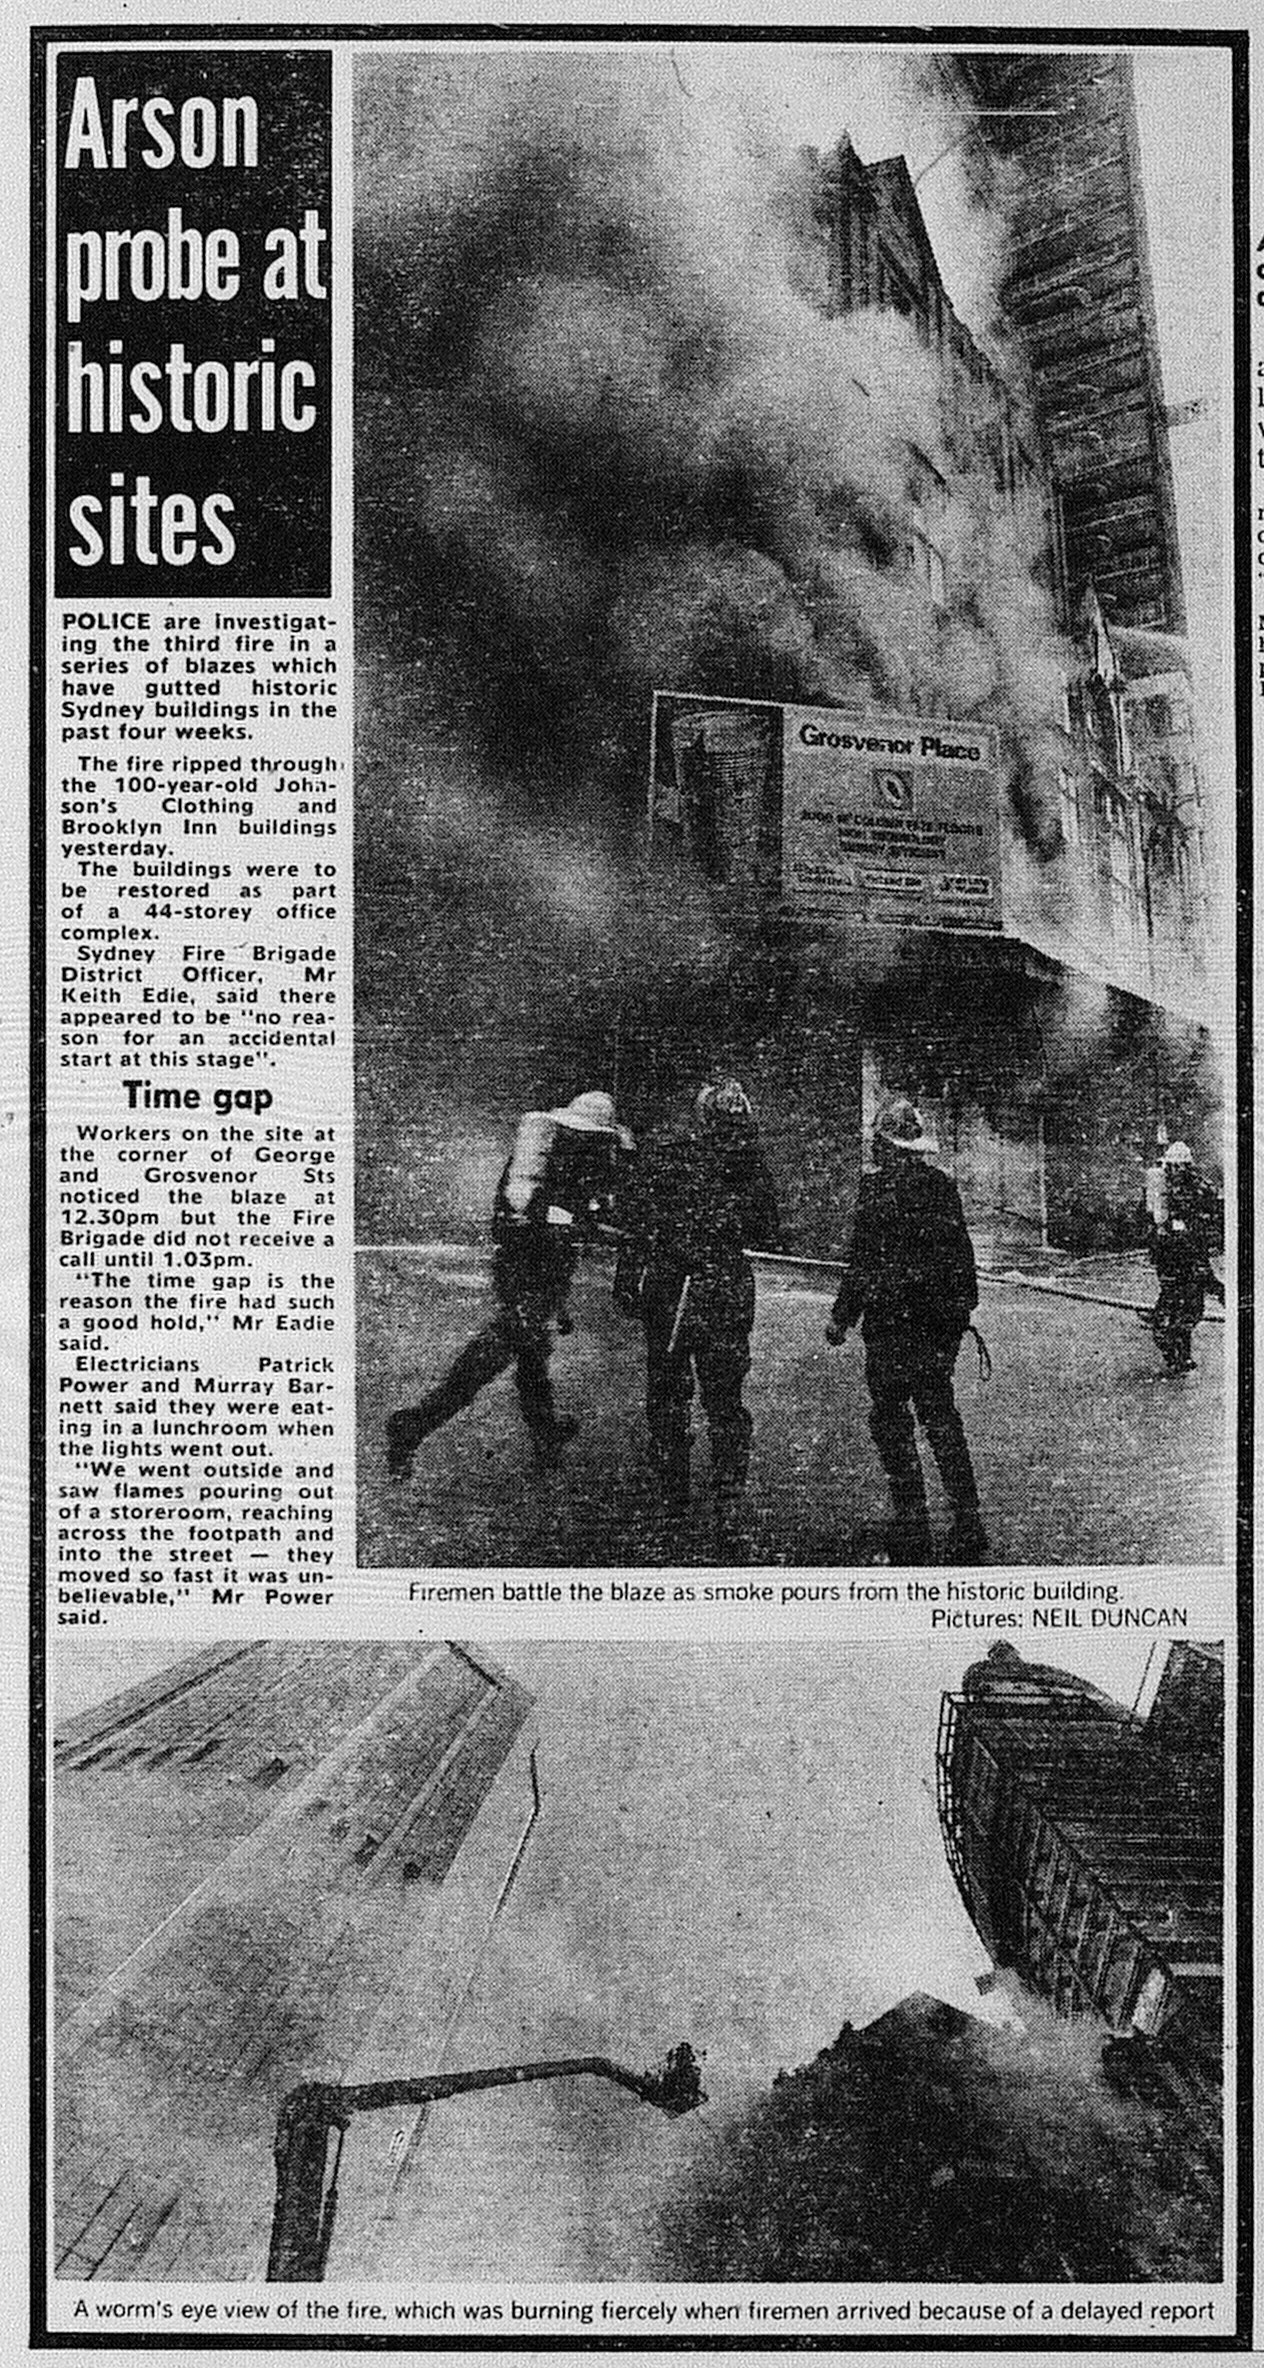 Grosvenor Place September 9 1985 daily telegraph 3